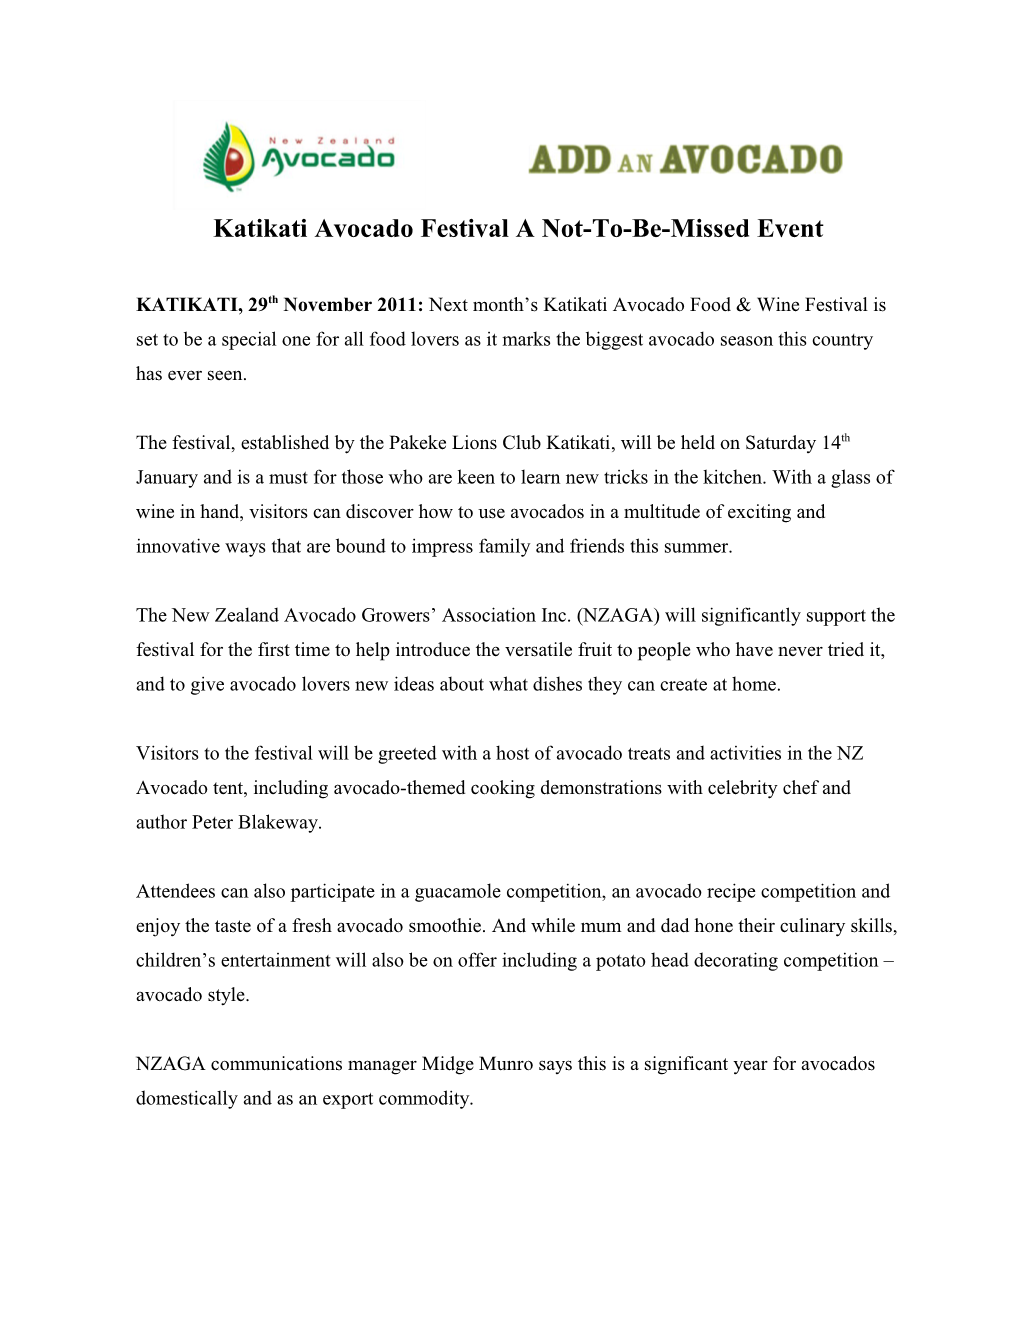 Katikati Avocado Festival to Mark a Bumper Season